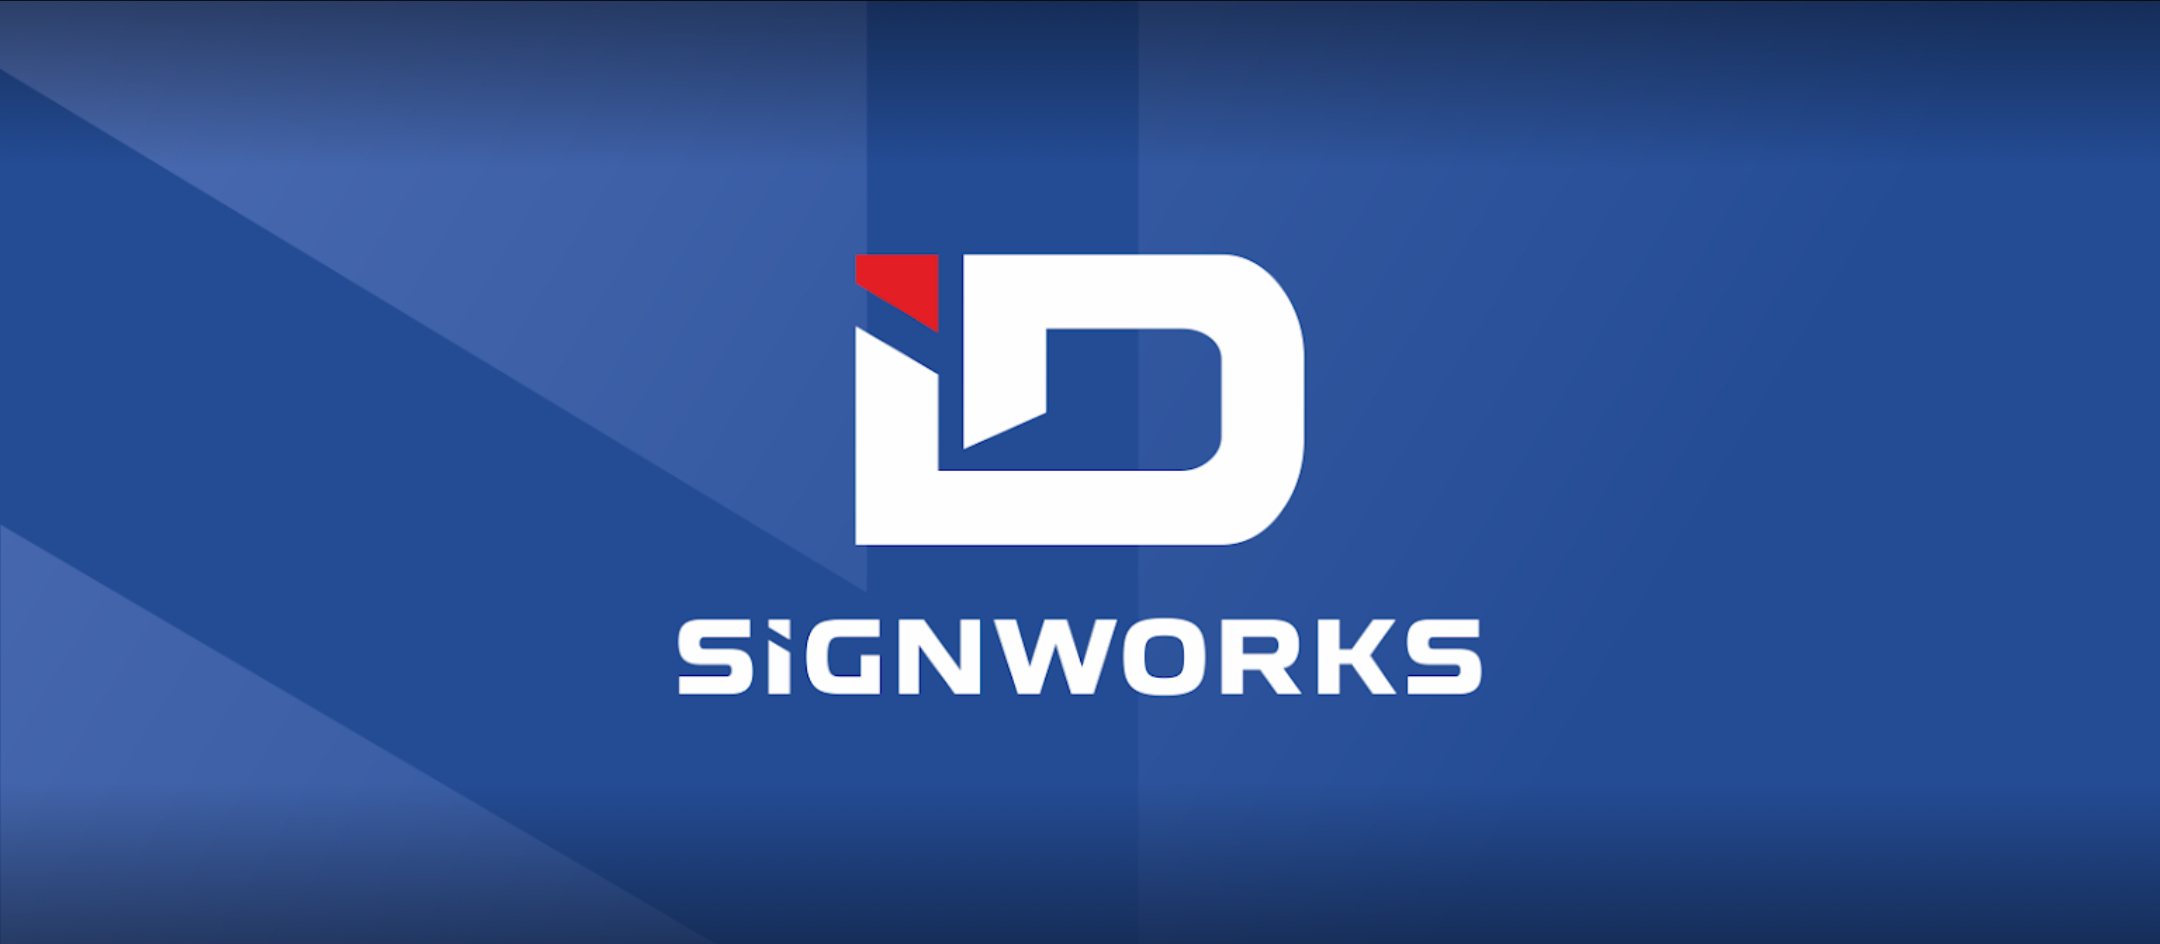 ID Signworks Ltd